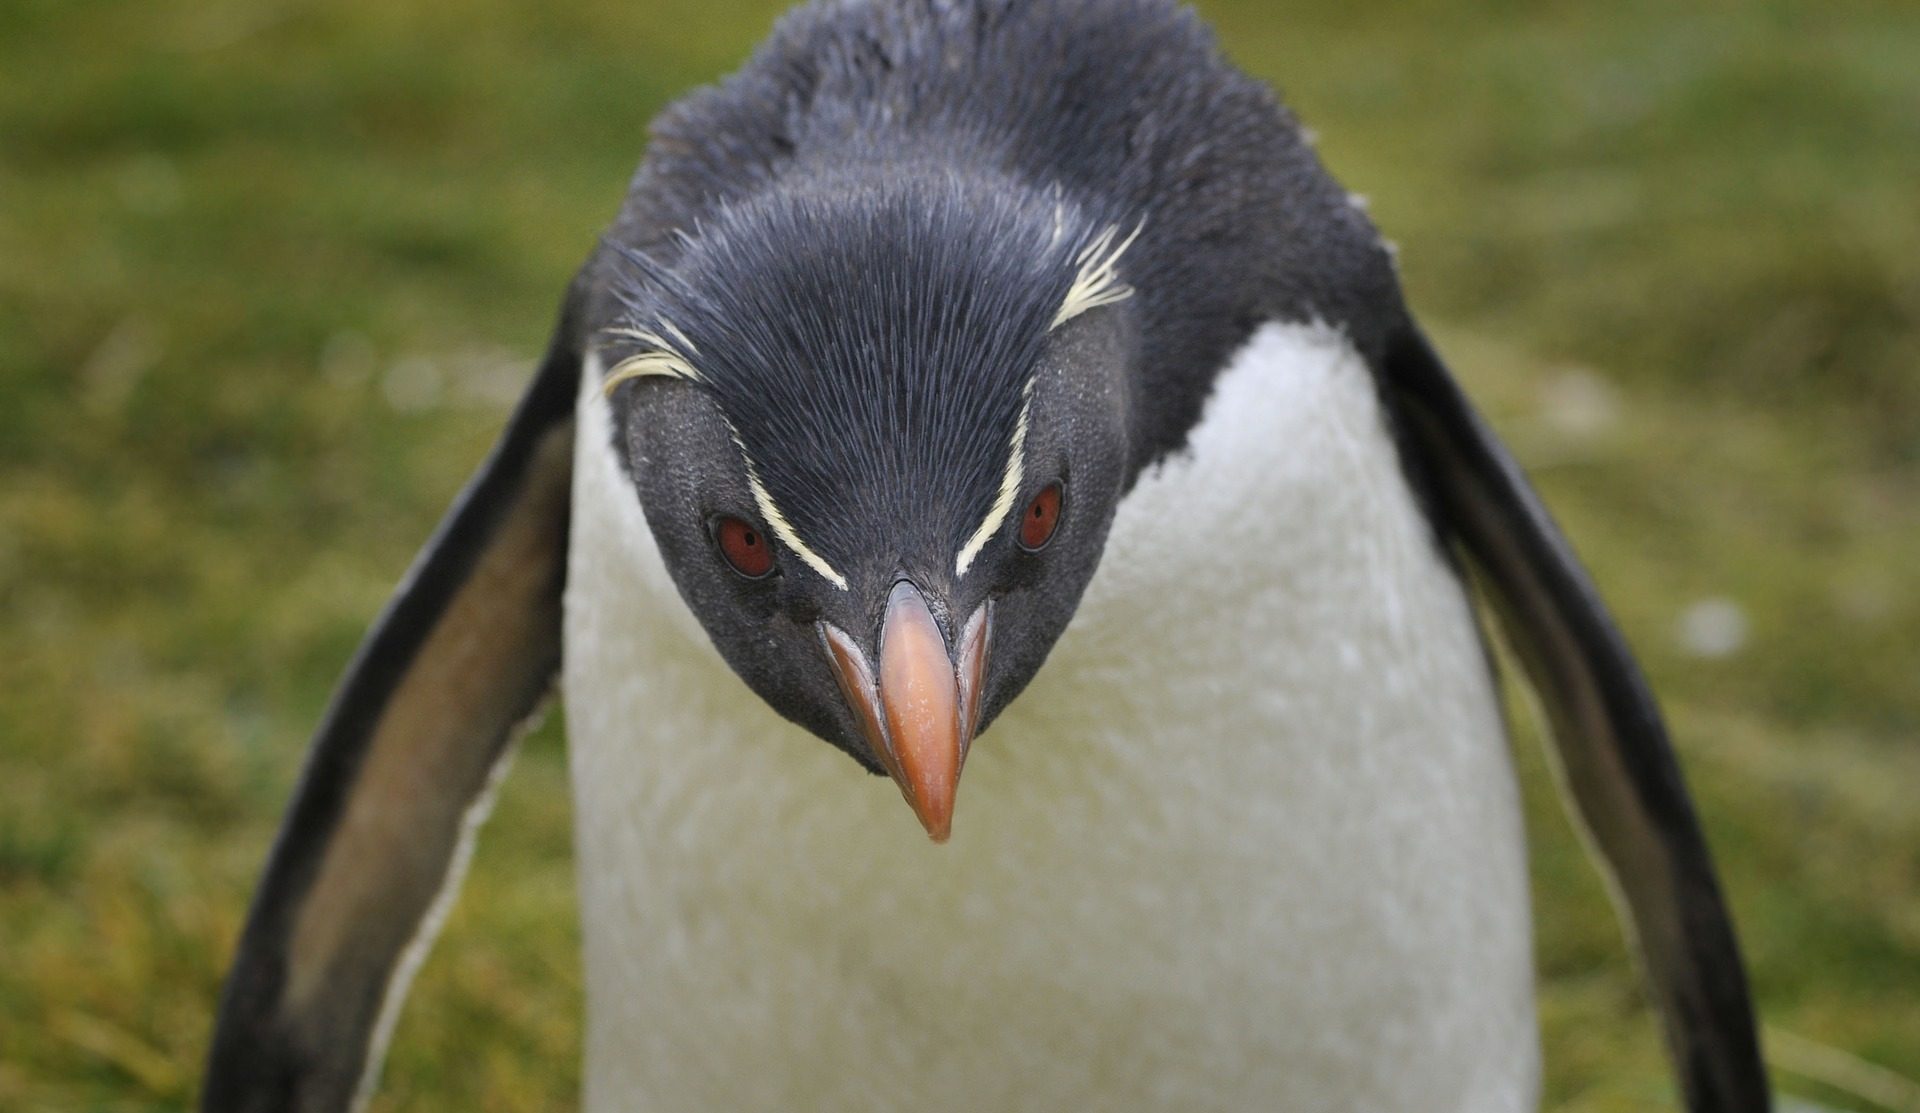 penguin credit Jodeng at Pixabay